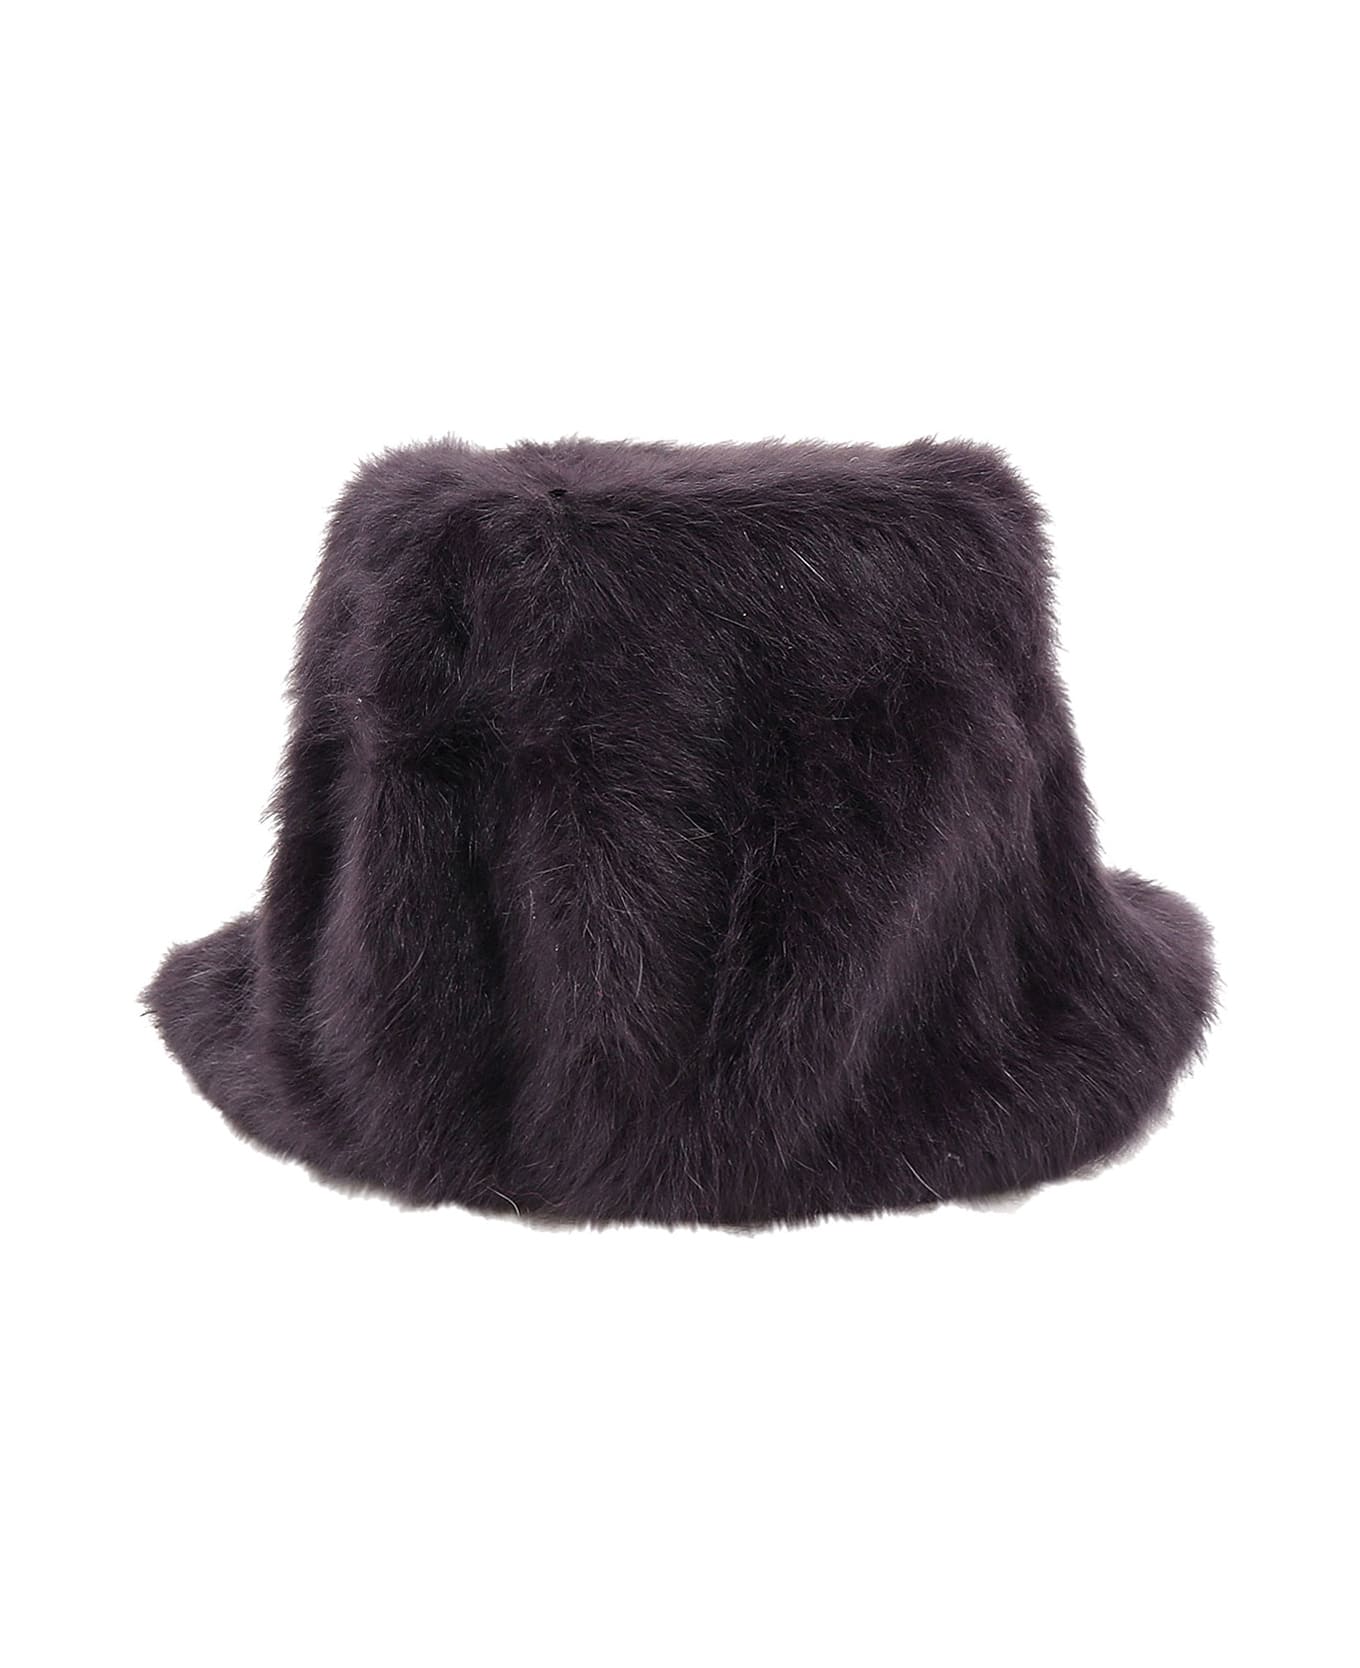 Kangol Hat - Black 帽子